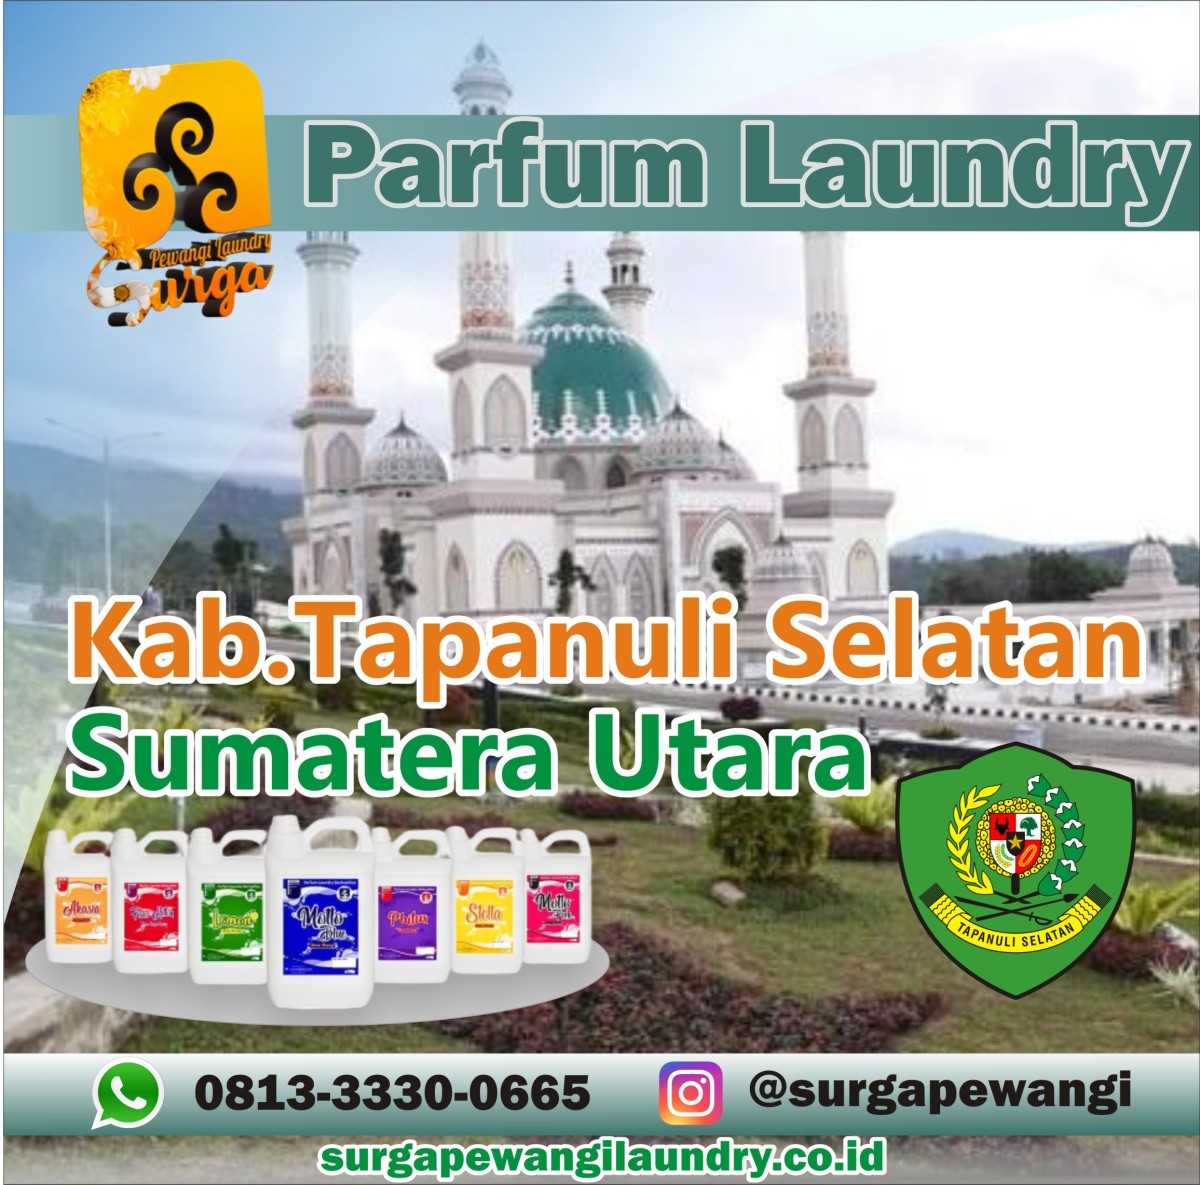 Parfum Laundry Tapanuli Selatan, Sumatera Utara